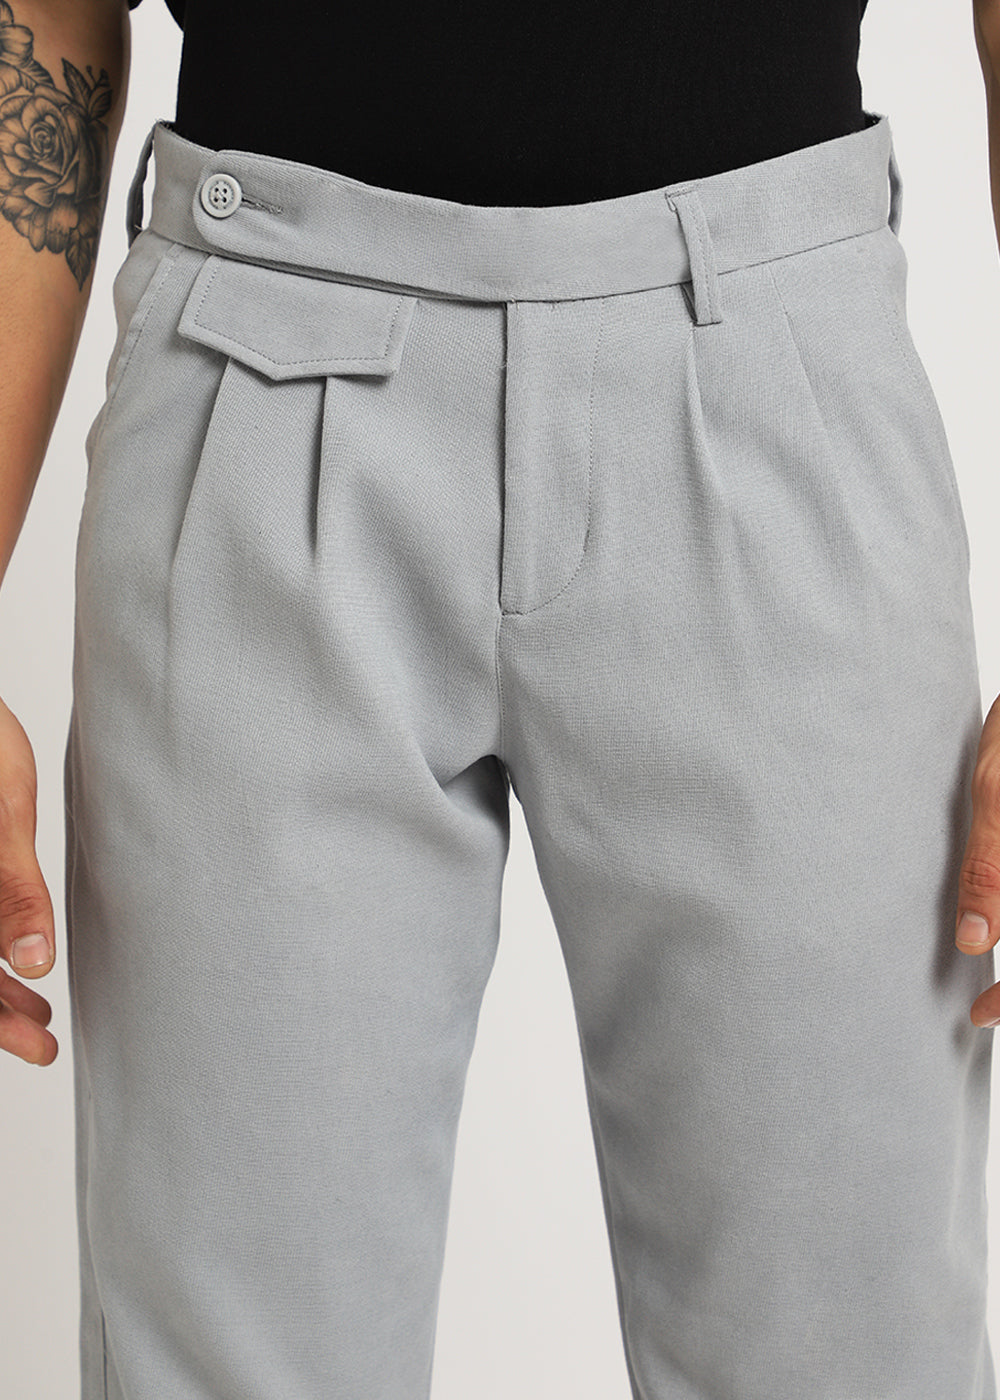 Blaze Gray Korean Trouser